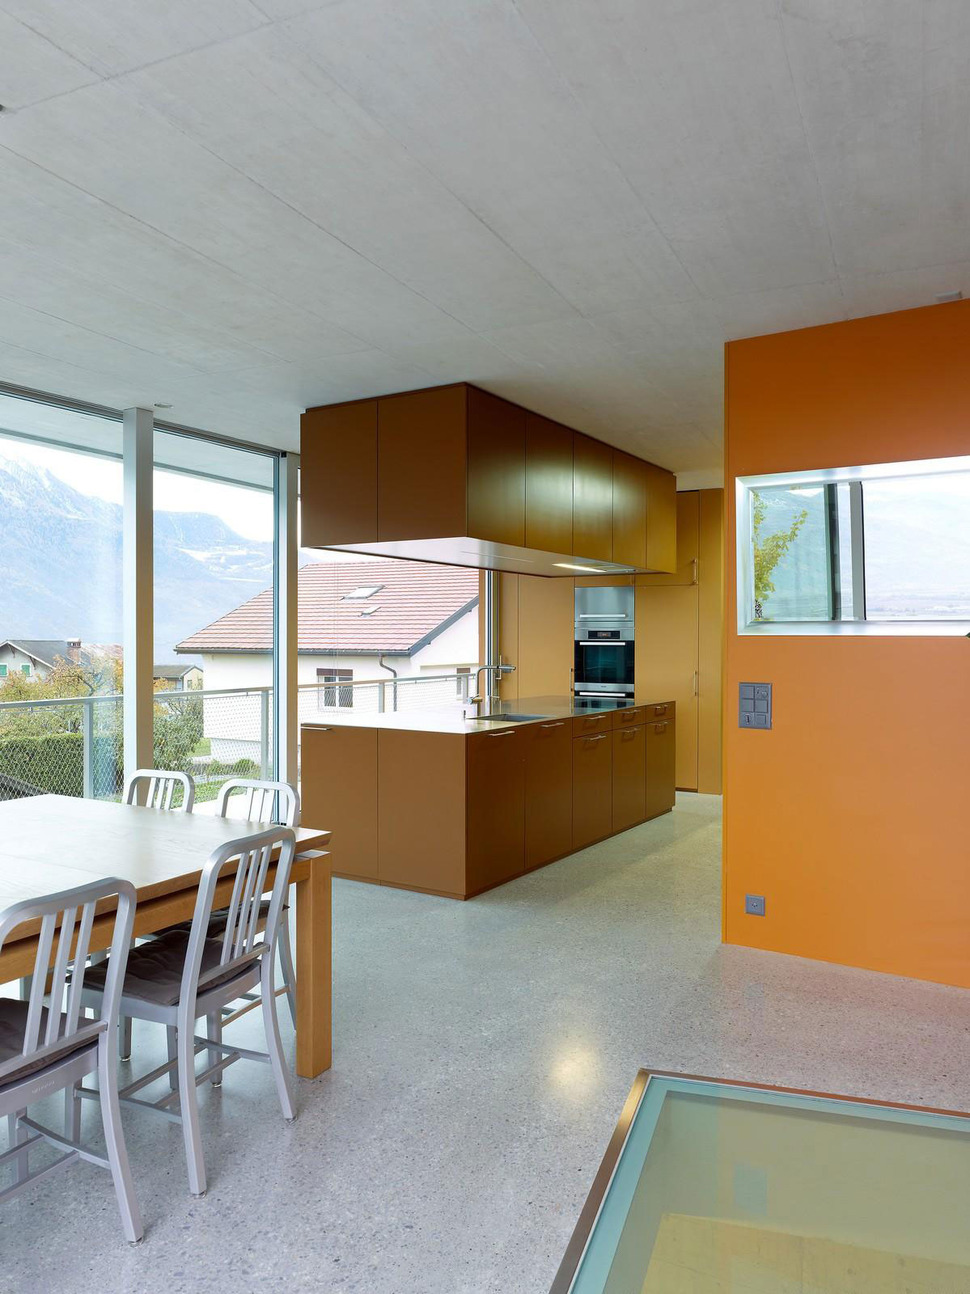 concrete-homesurrounded-vineyard-shades-brown-10-kitchen.jpg